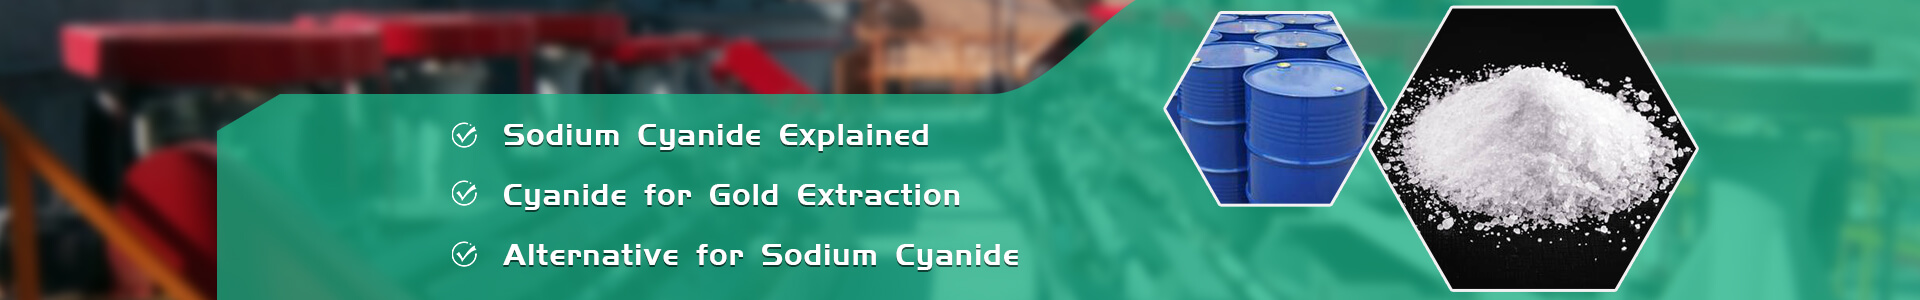 Sodium Cyanide Explained